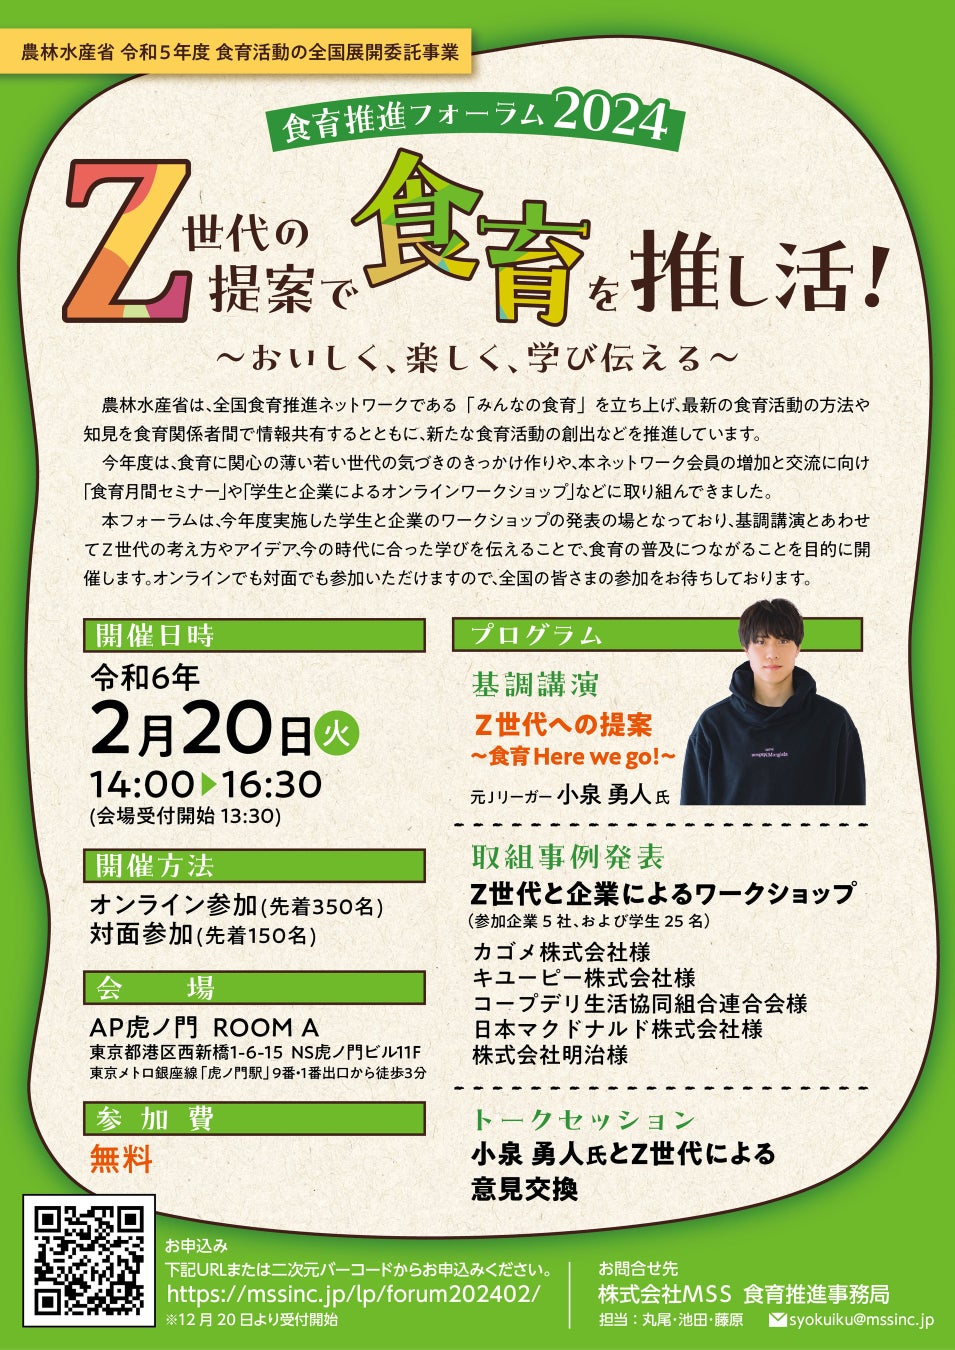 【NinjaFoods】神戸商工会議所主催「フードテック」スタートアップイベントに登壇